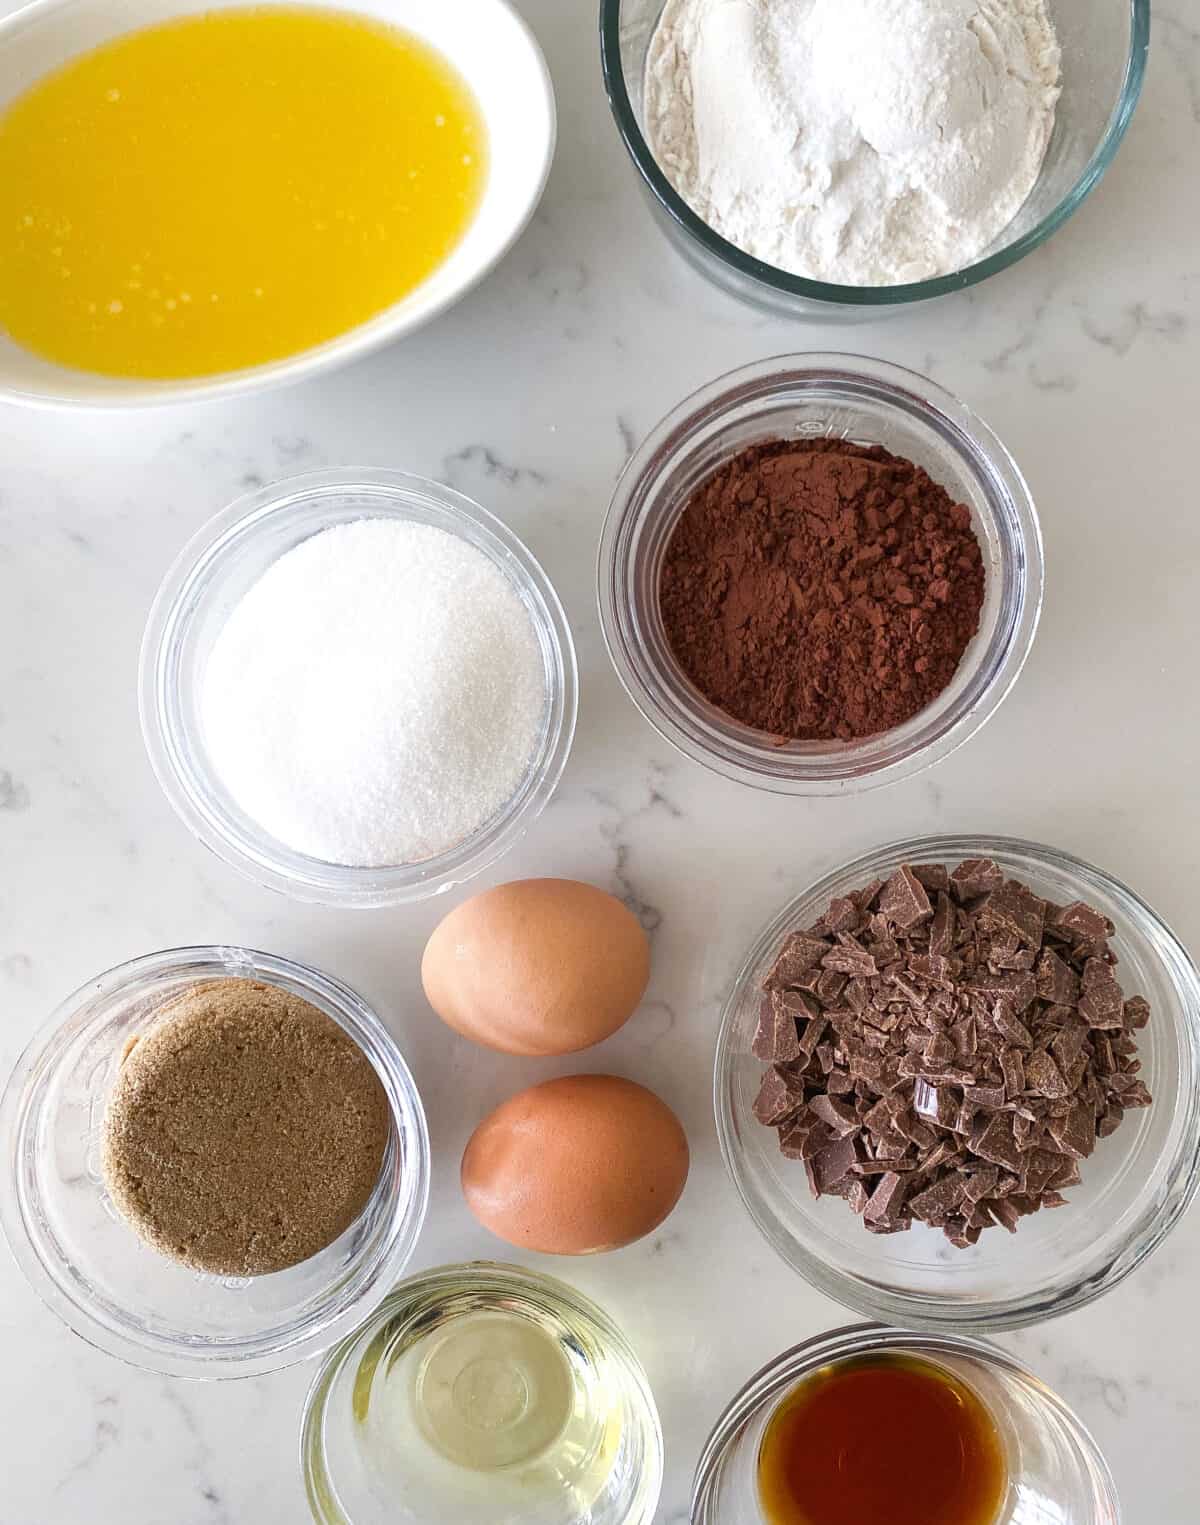 fudge brownie recipe ingredients on counter